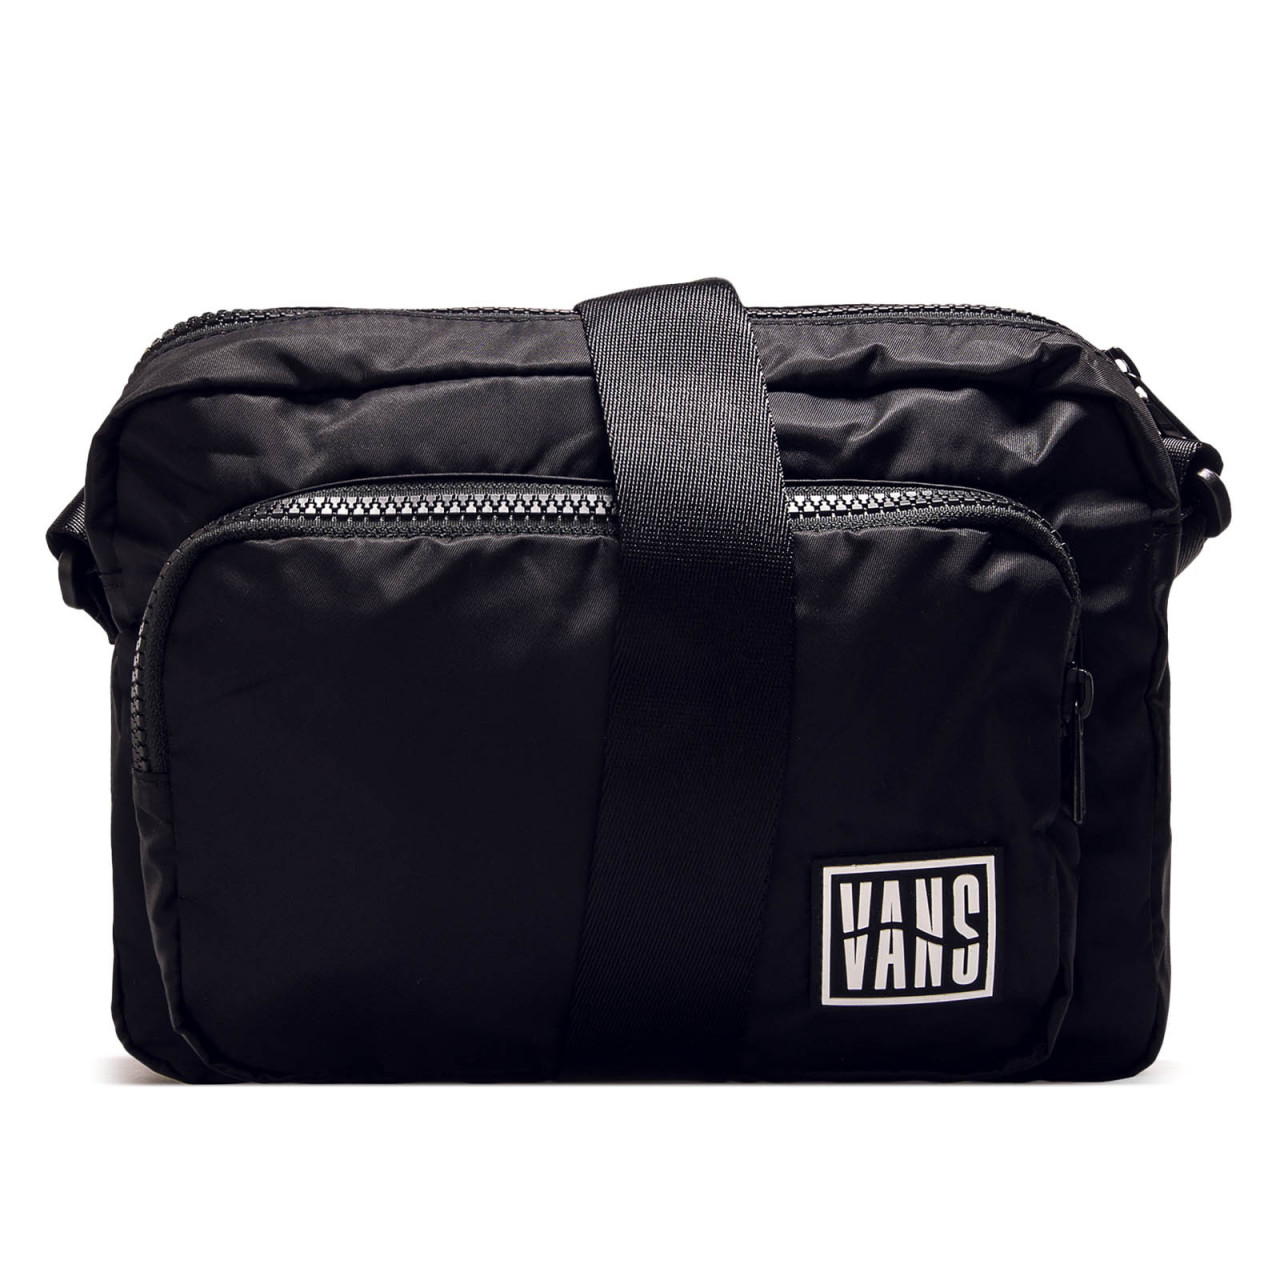 vans shoulder bag 2019